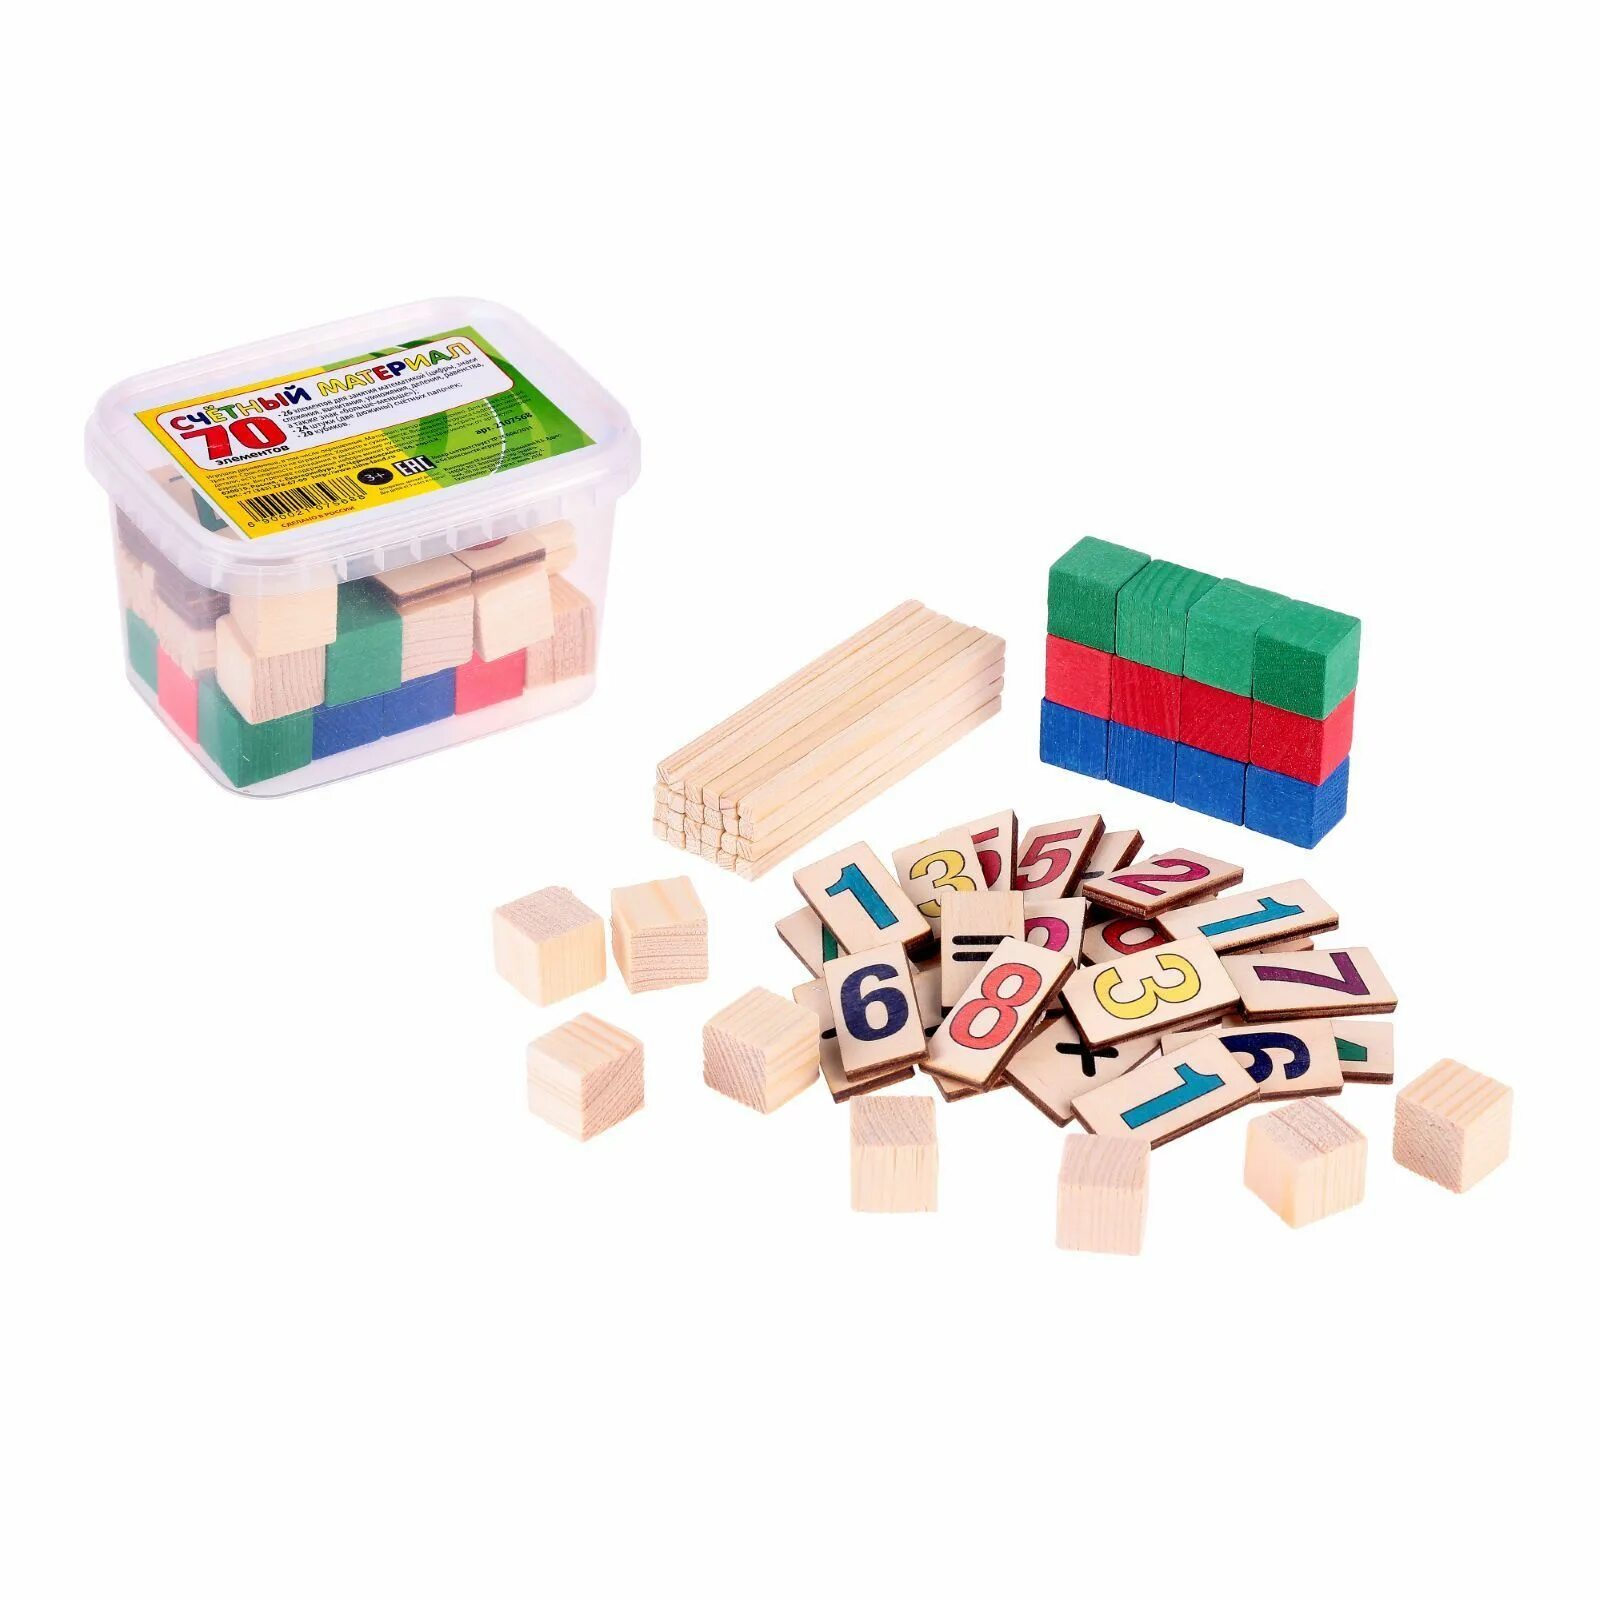 Счетный материал: кубики 65шт. Анданте счетный материал кубики из дерева. Кубики счетный материал конструктор. Счетный материал разноцветные кубики.